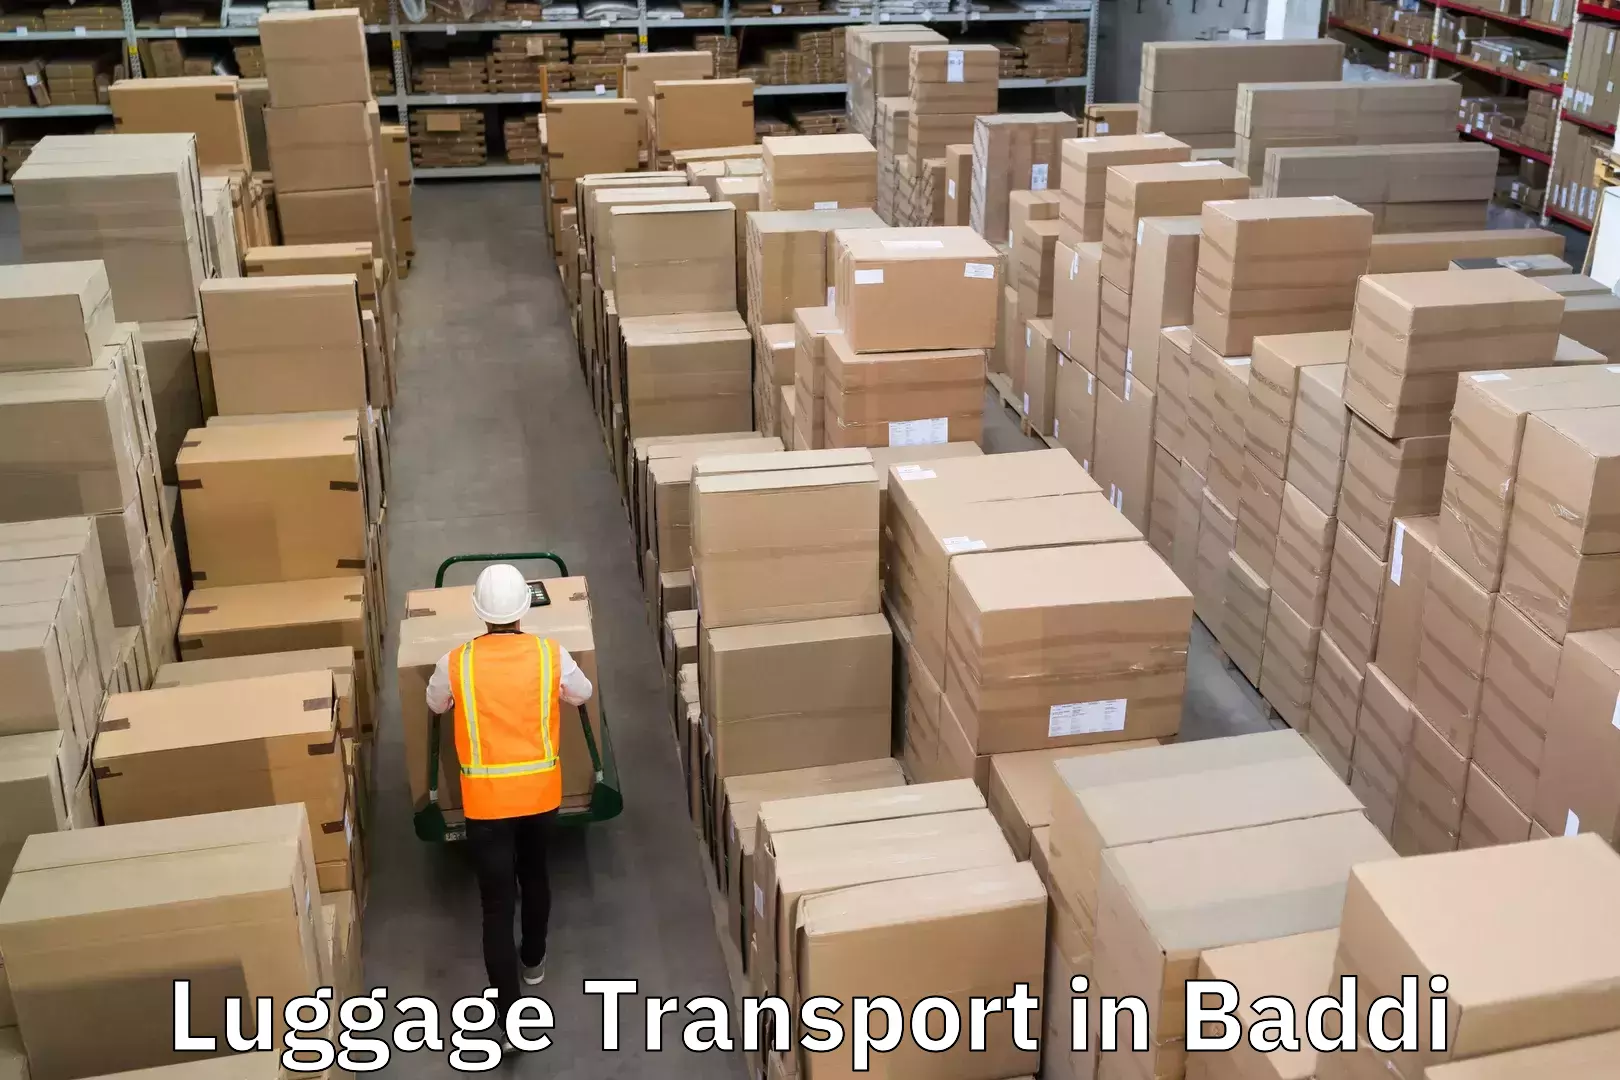 Urgent luggage shipment in Baddi